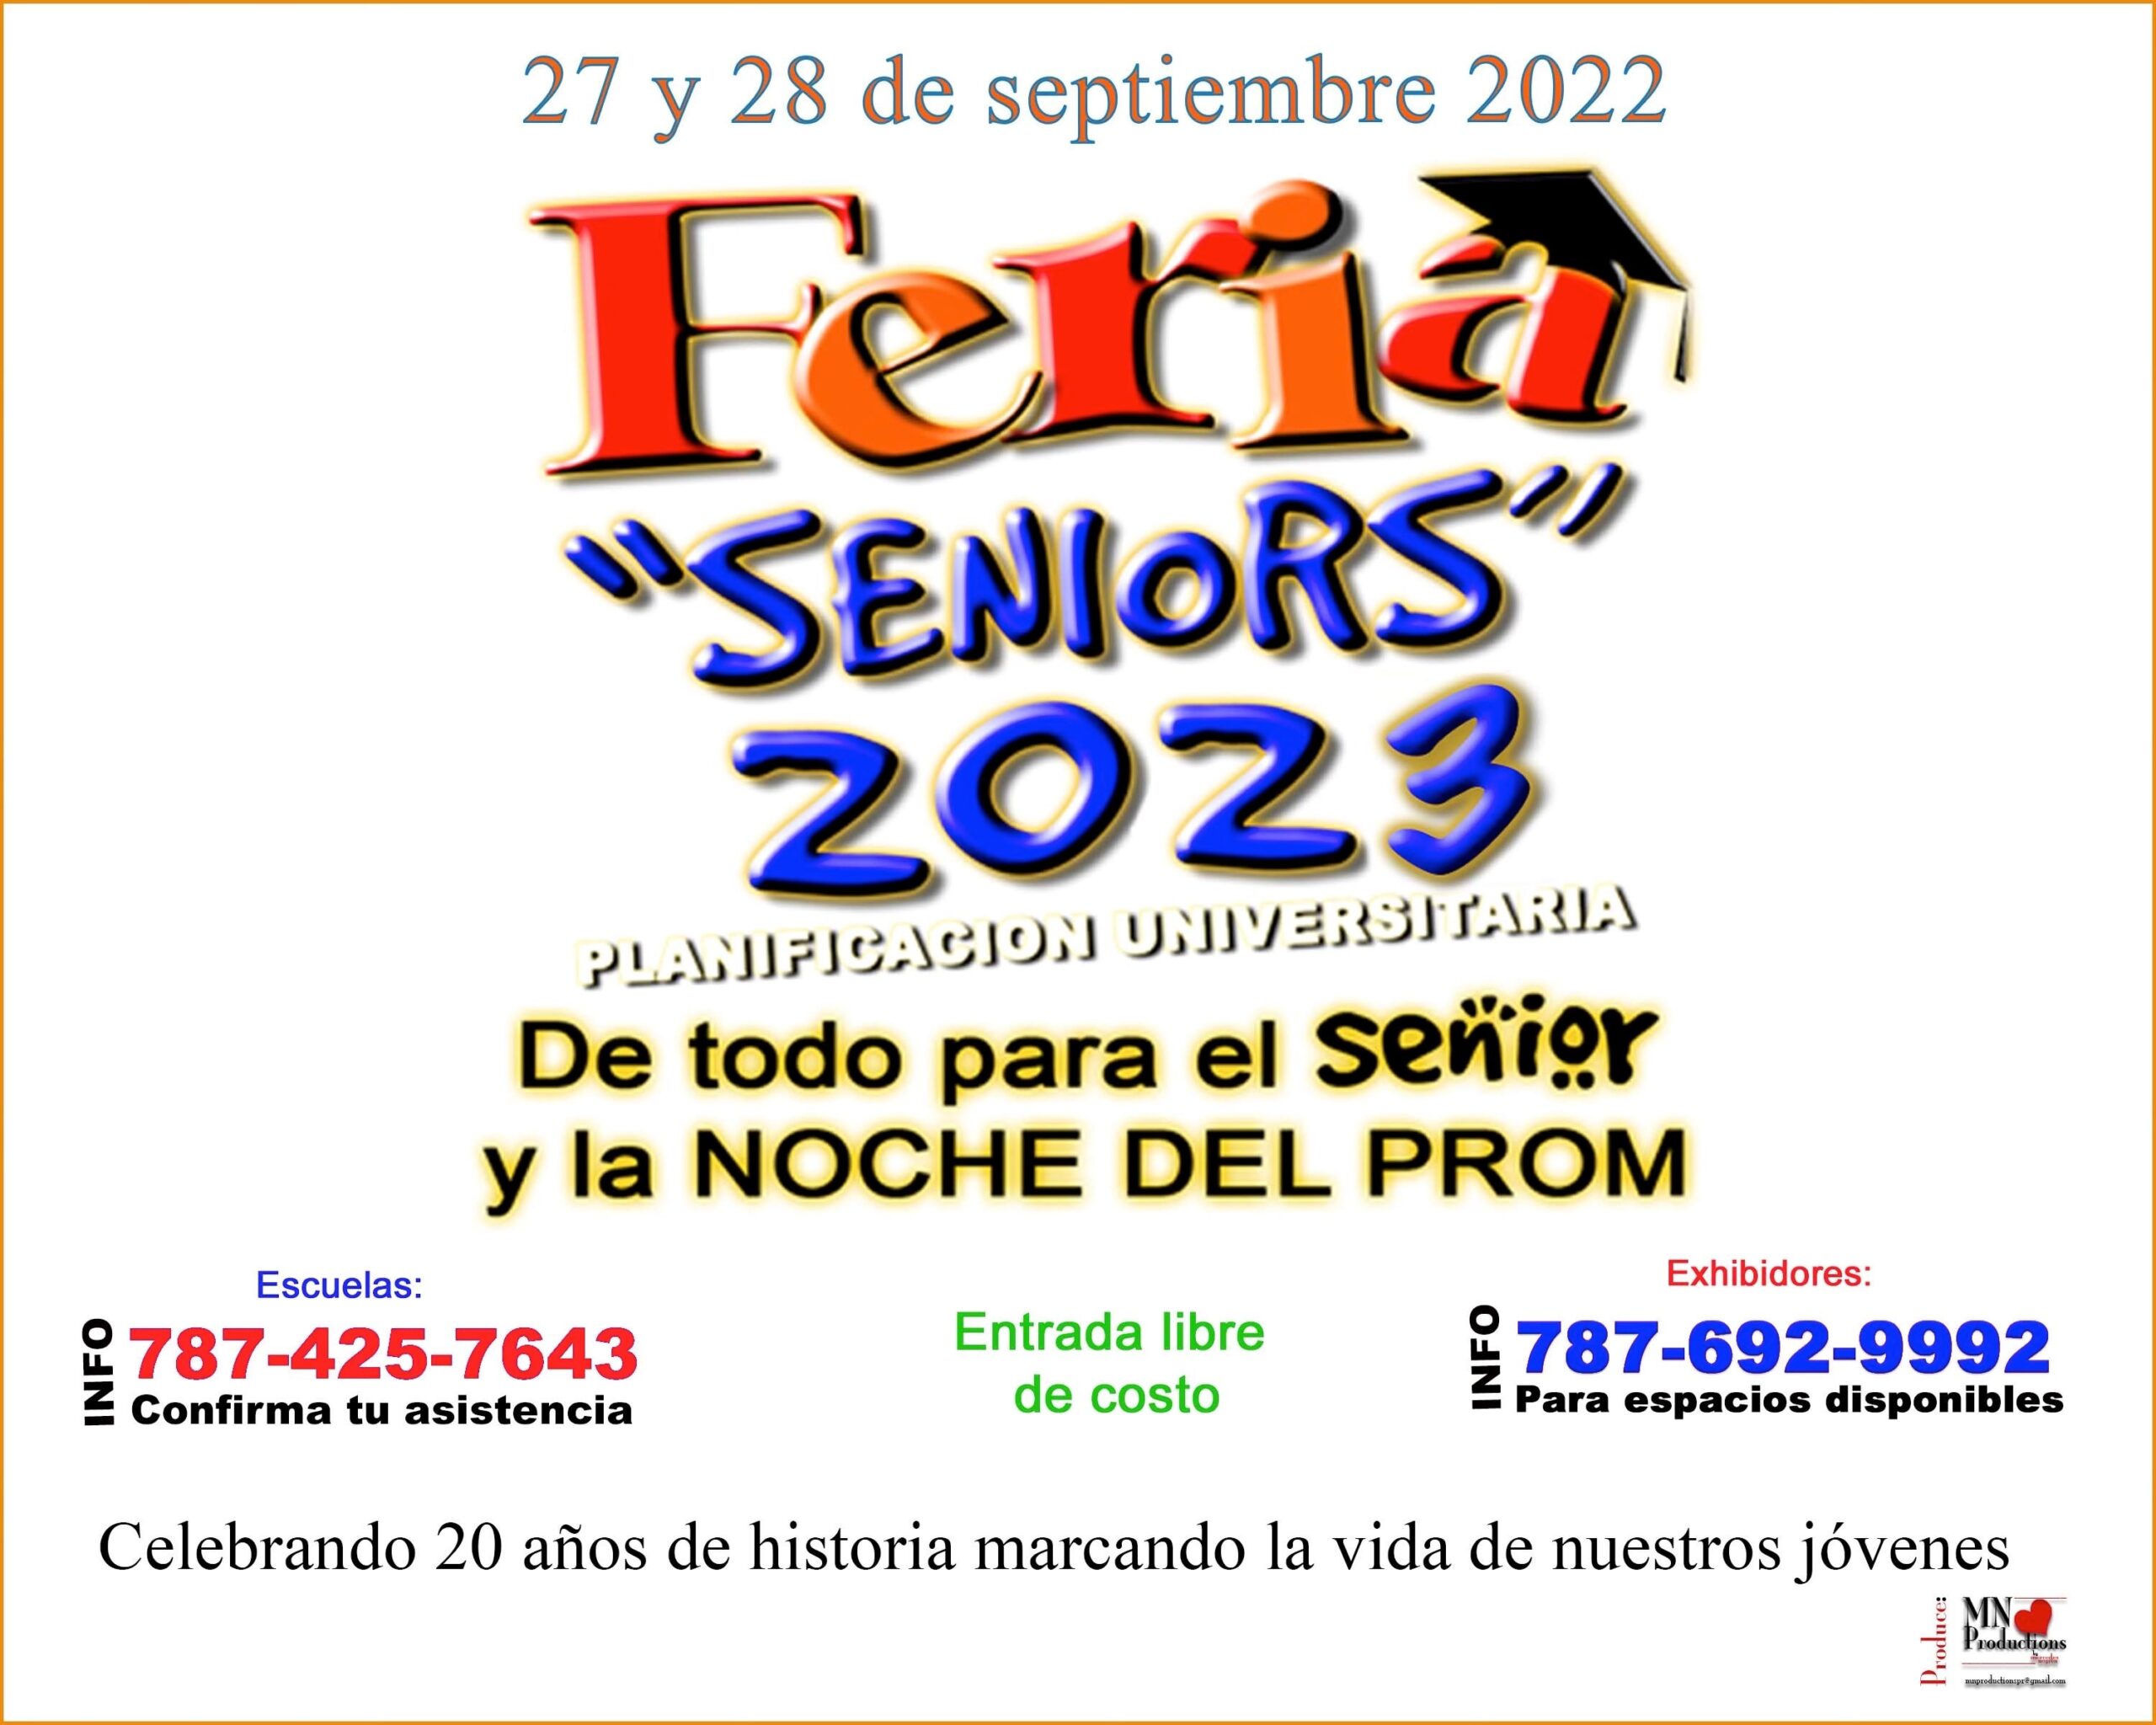 Feria "Seniors" 2023 Puerto Rico Convention Center